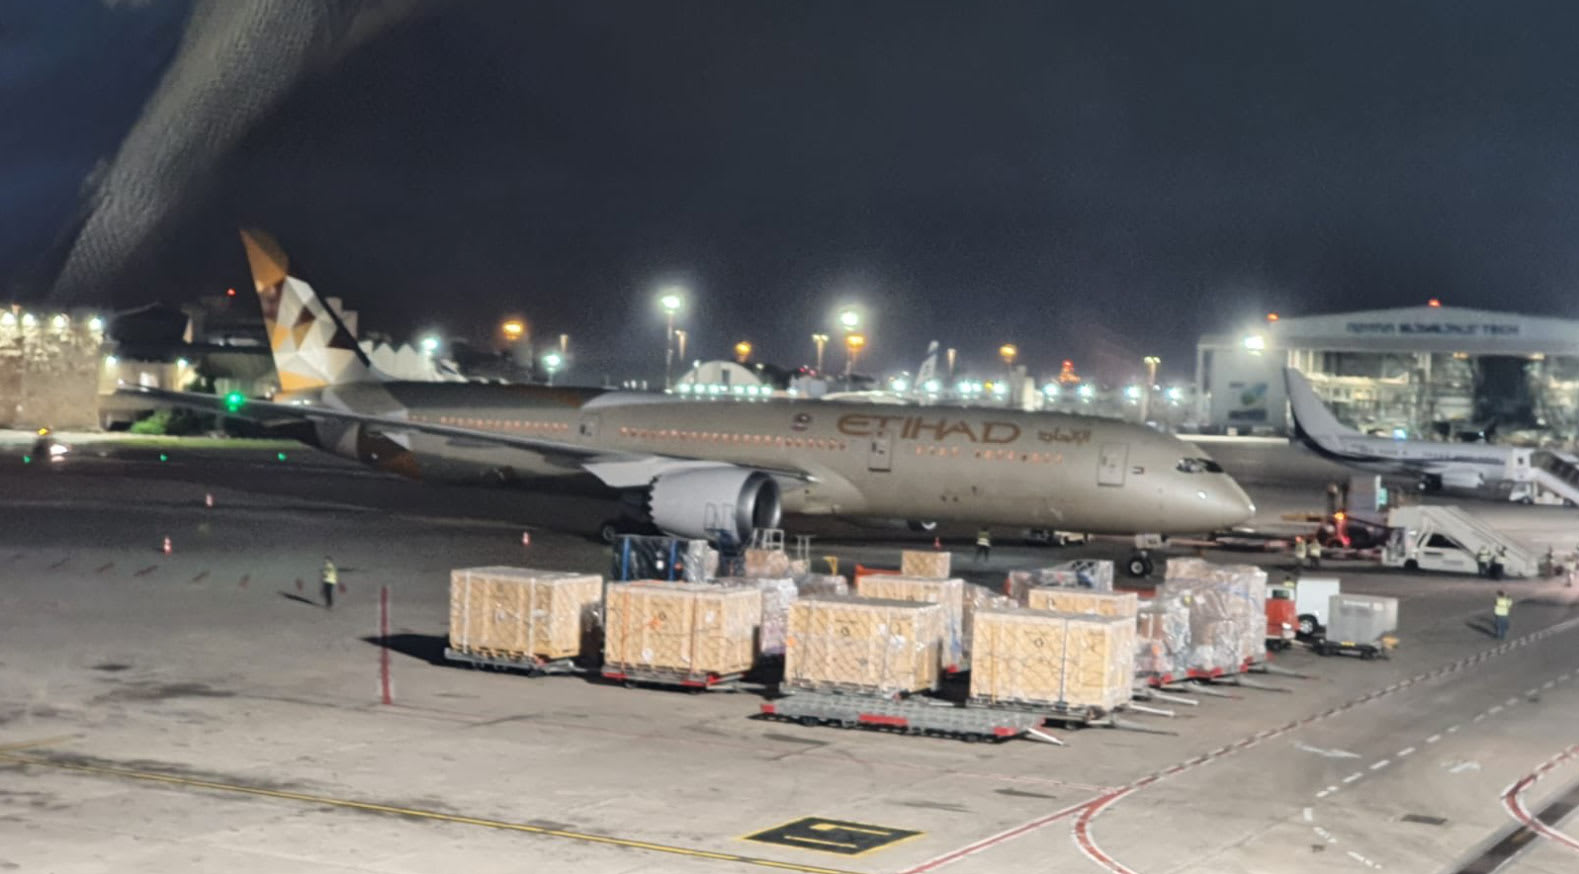 صورة طائرة الاتحاد الإماراتية في مطار بن غوريون وفقا لصفحة إسرائيل بالخليج على تويتر